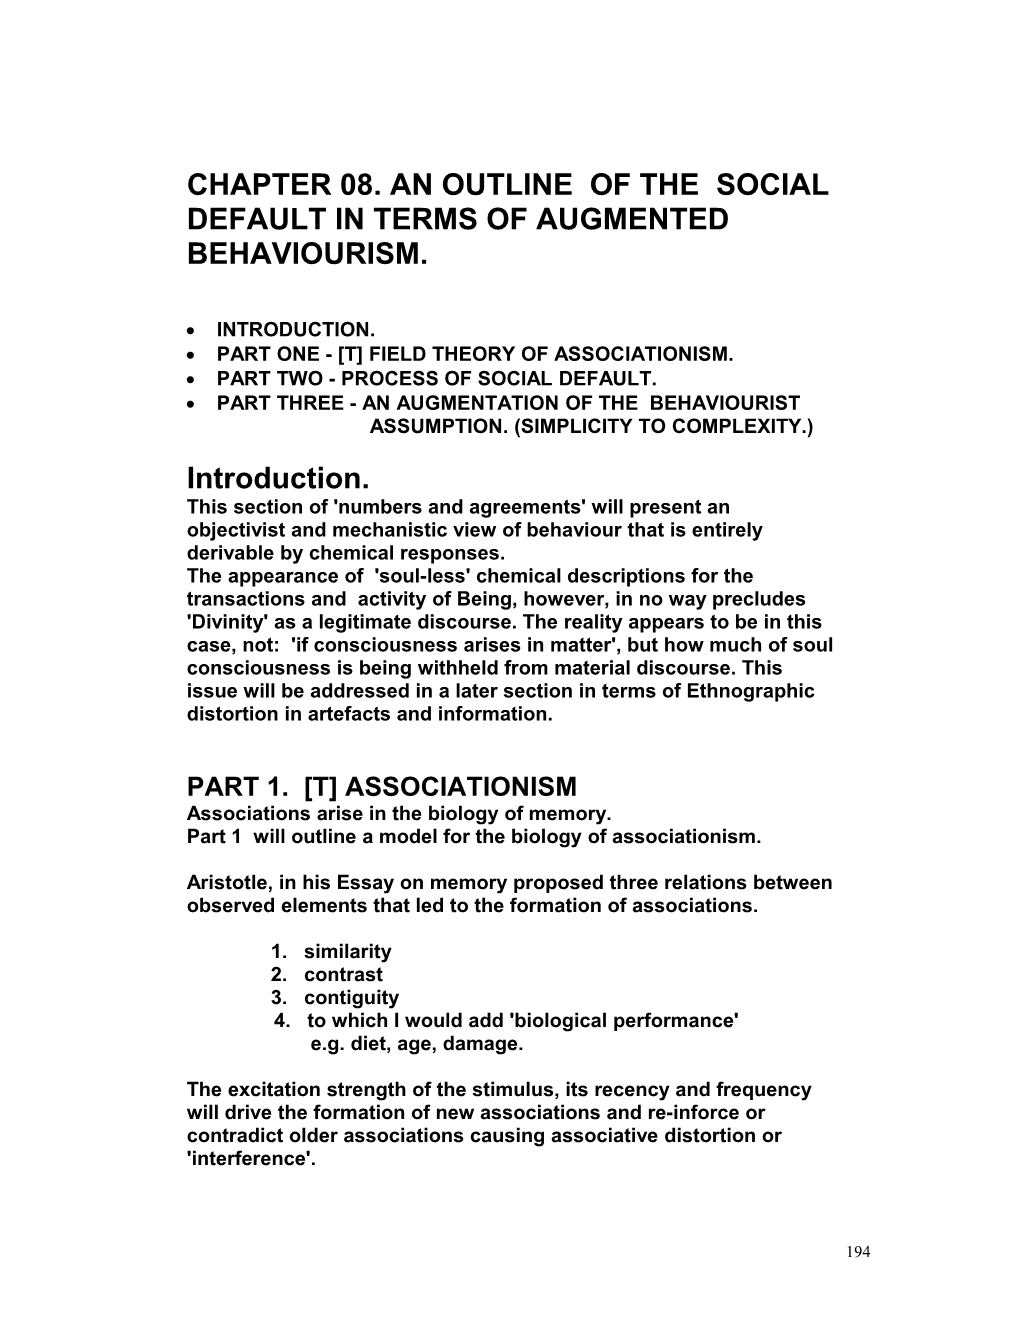 Outline of Social Default